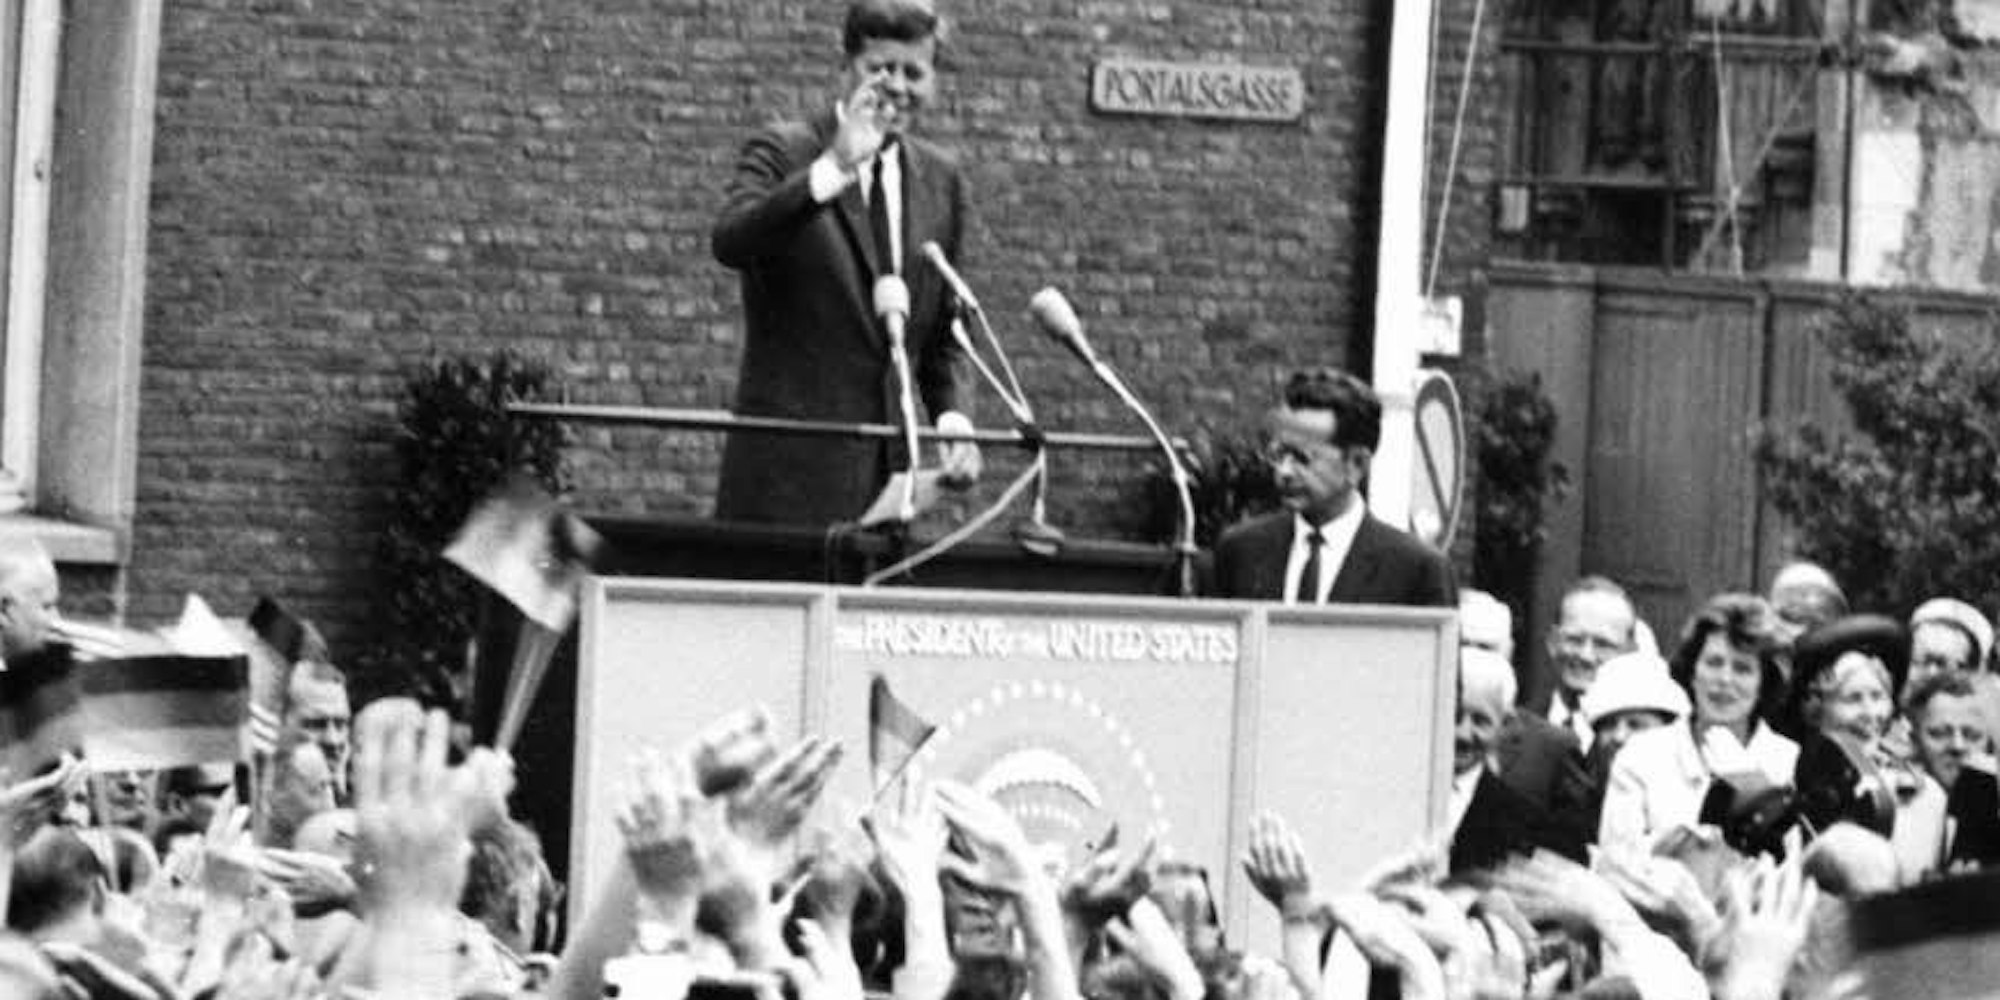 Umjubelt auch in Köln: US-Präsident John F. Kennedy sprach 1963 vor dem Historischen Rathaus. (Foto: Rundschau-Archiv)